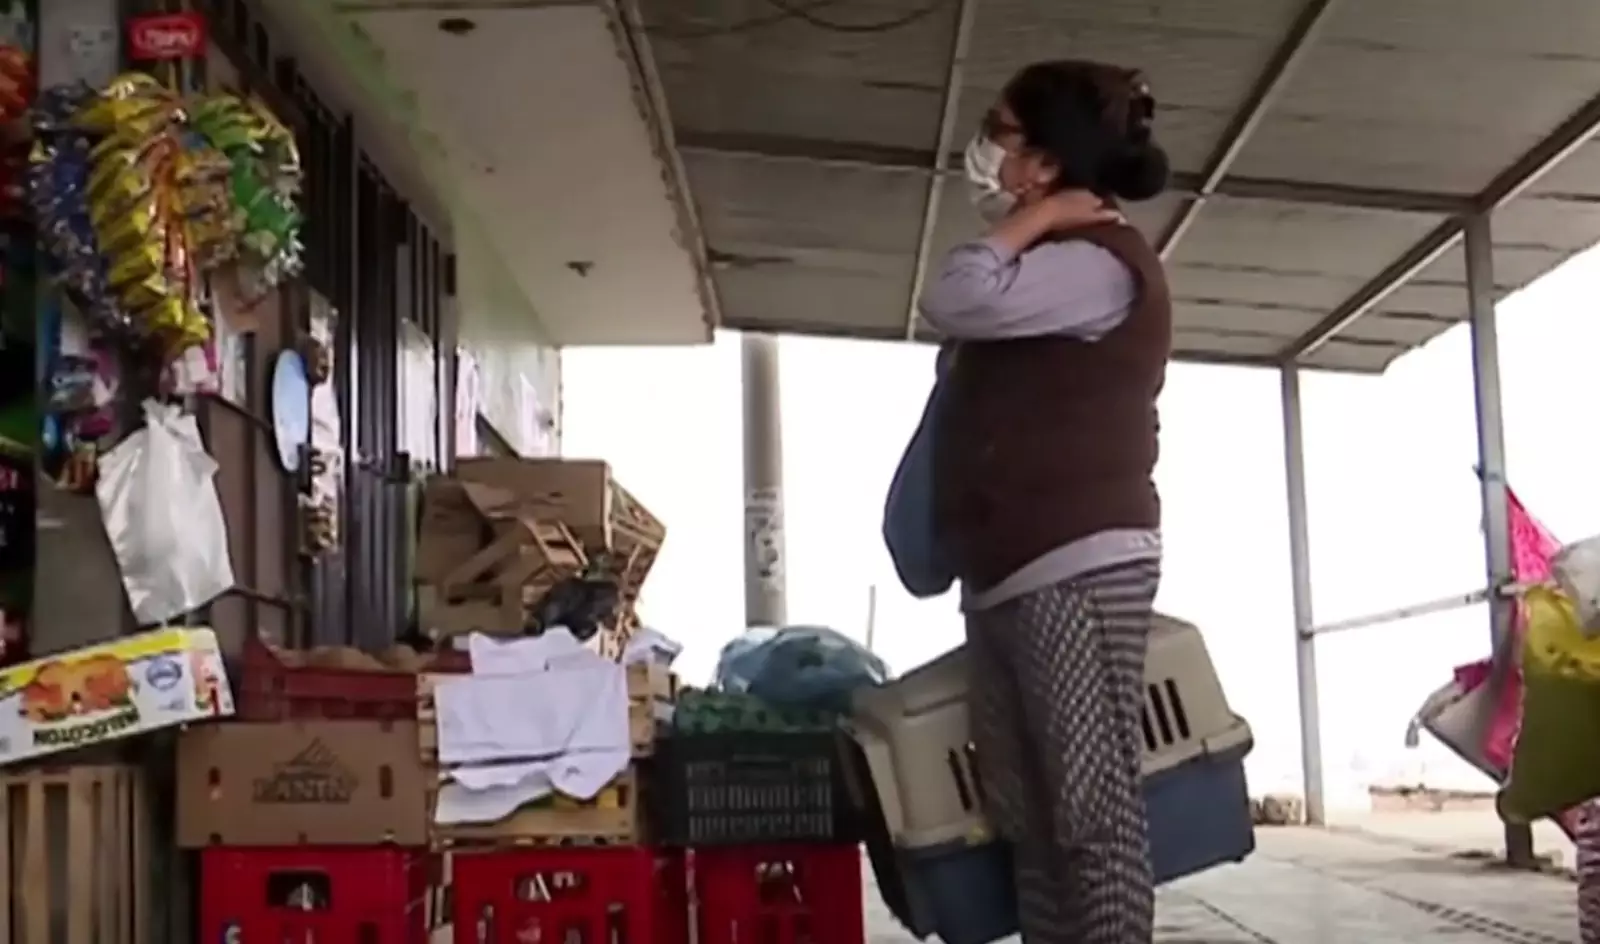 Марибель Сотело и ее сын купили «песика» в небольшом магазине в центре города.